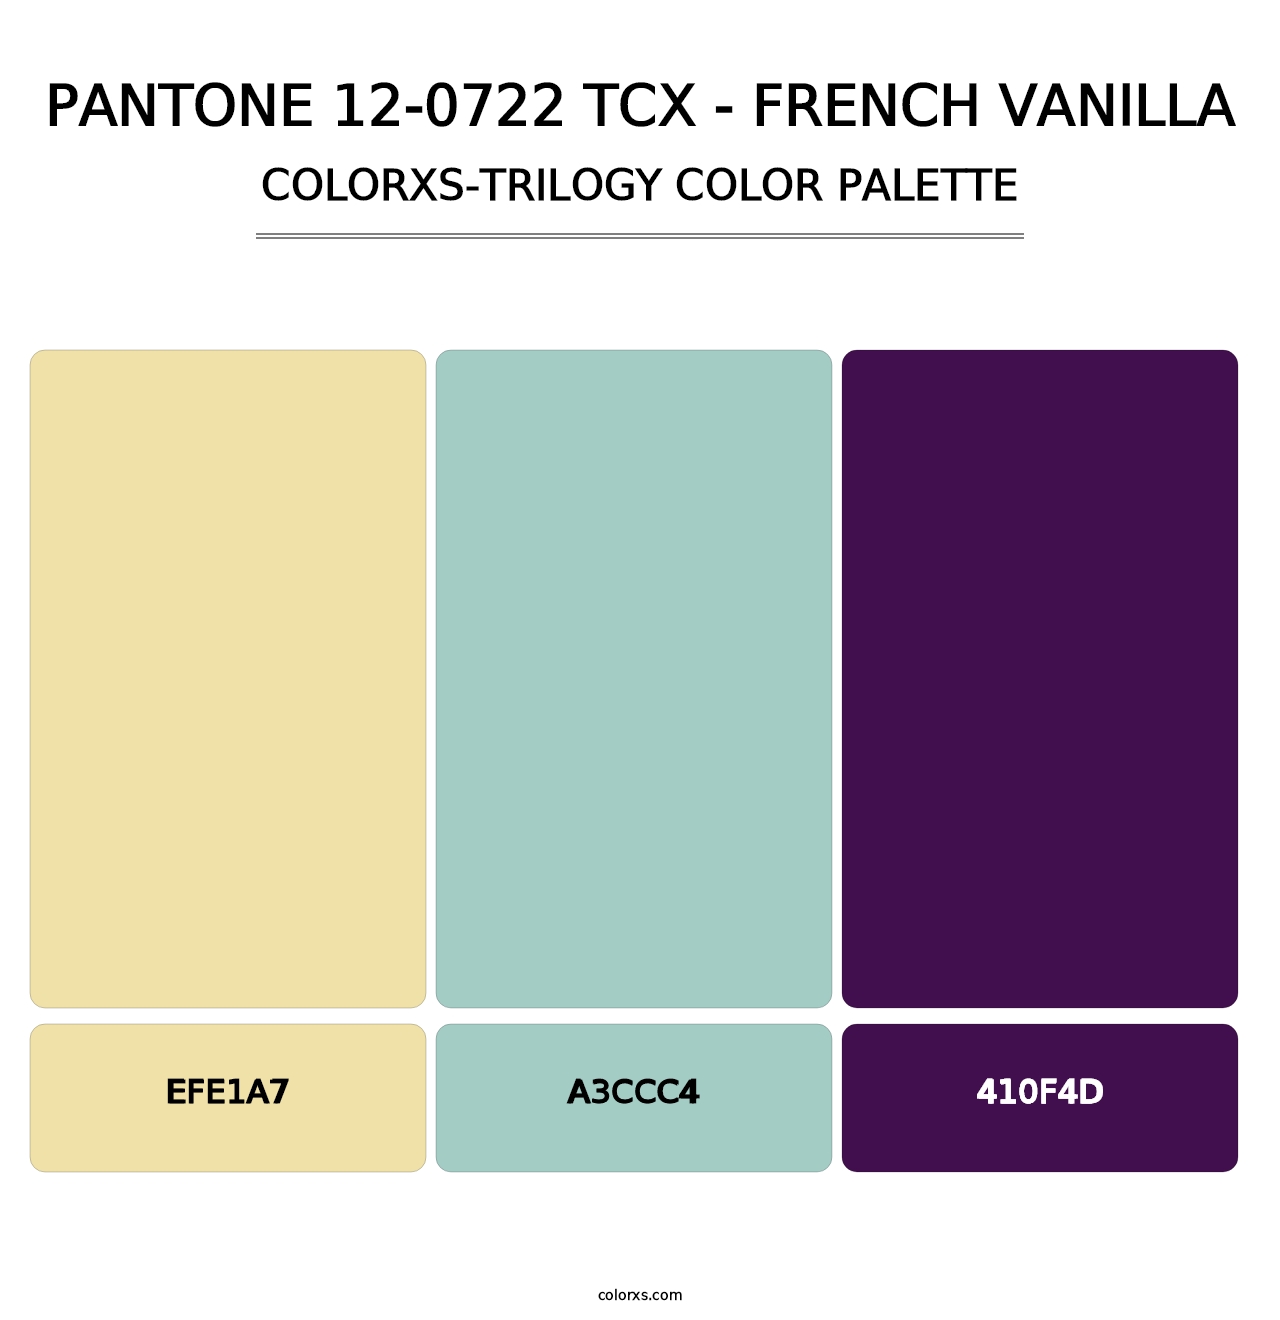 PANTONE 12-0722 TCX - French Vanilla - Colorxs Trilogy Palette